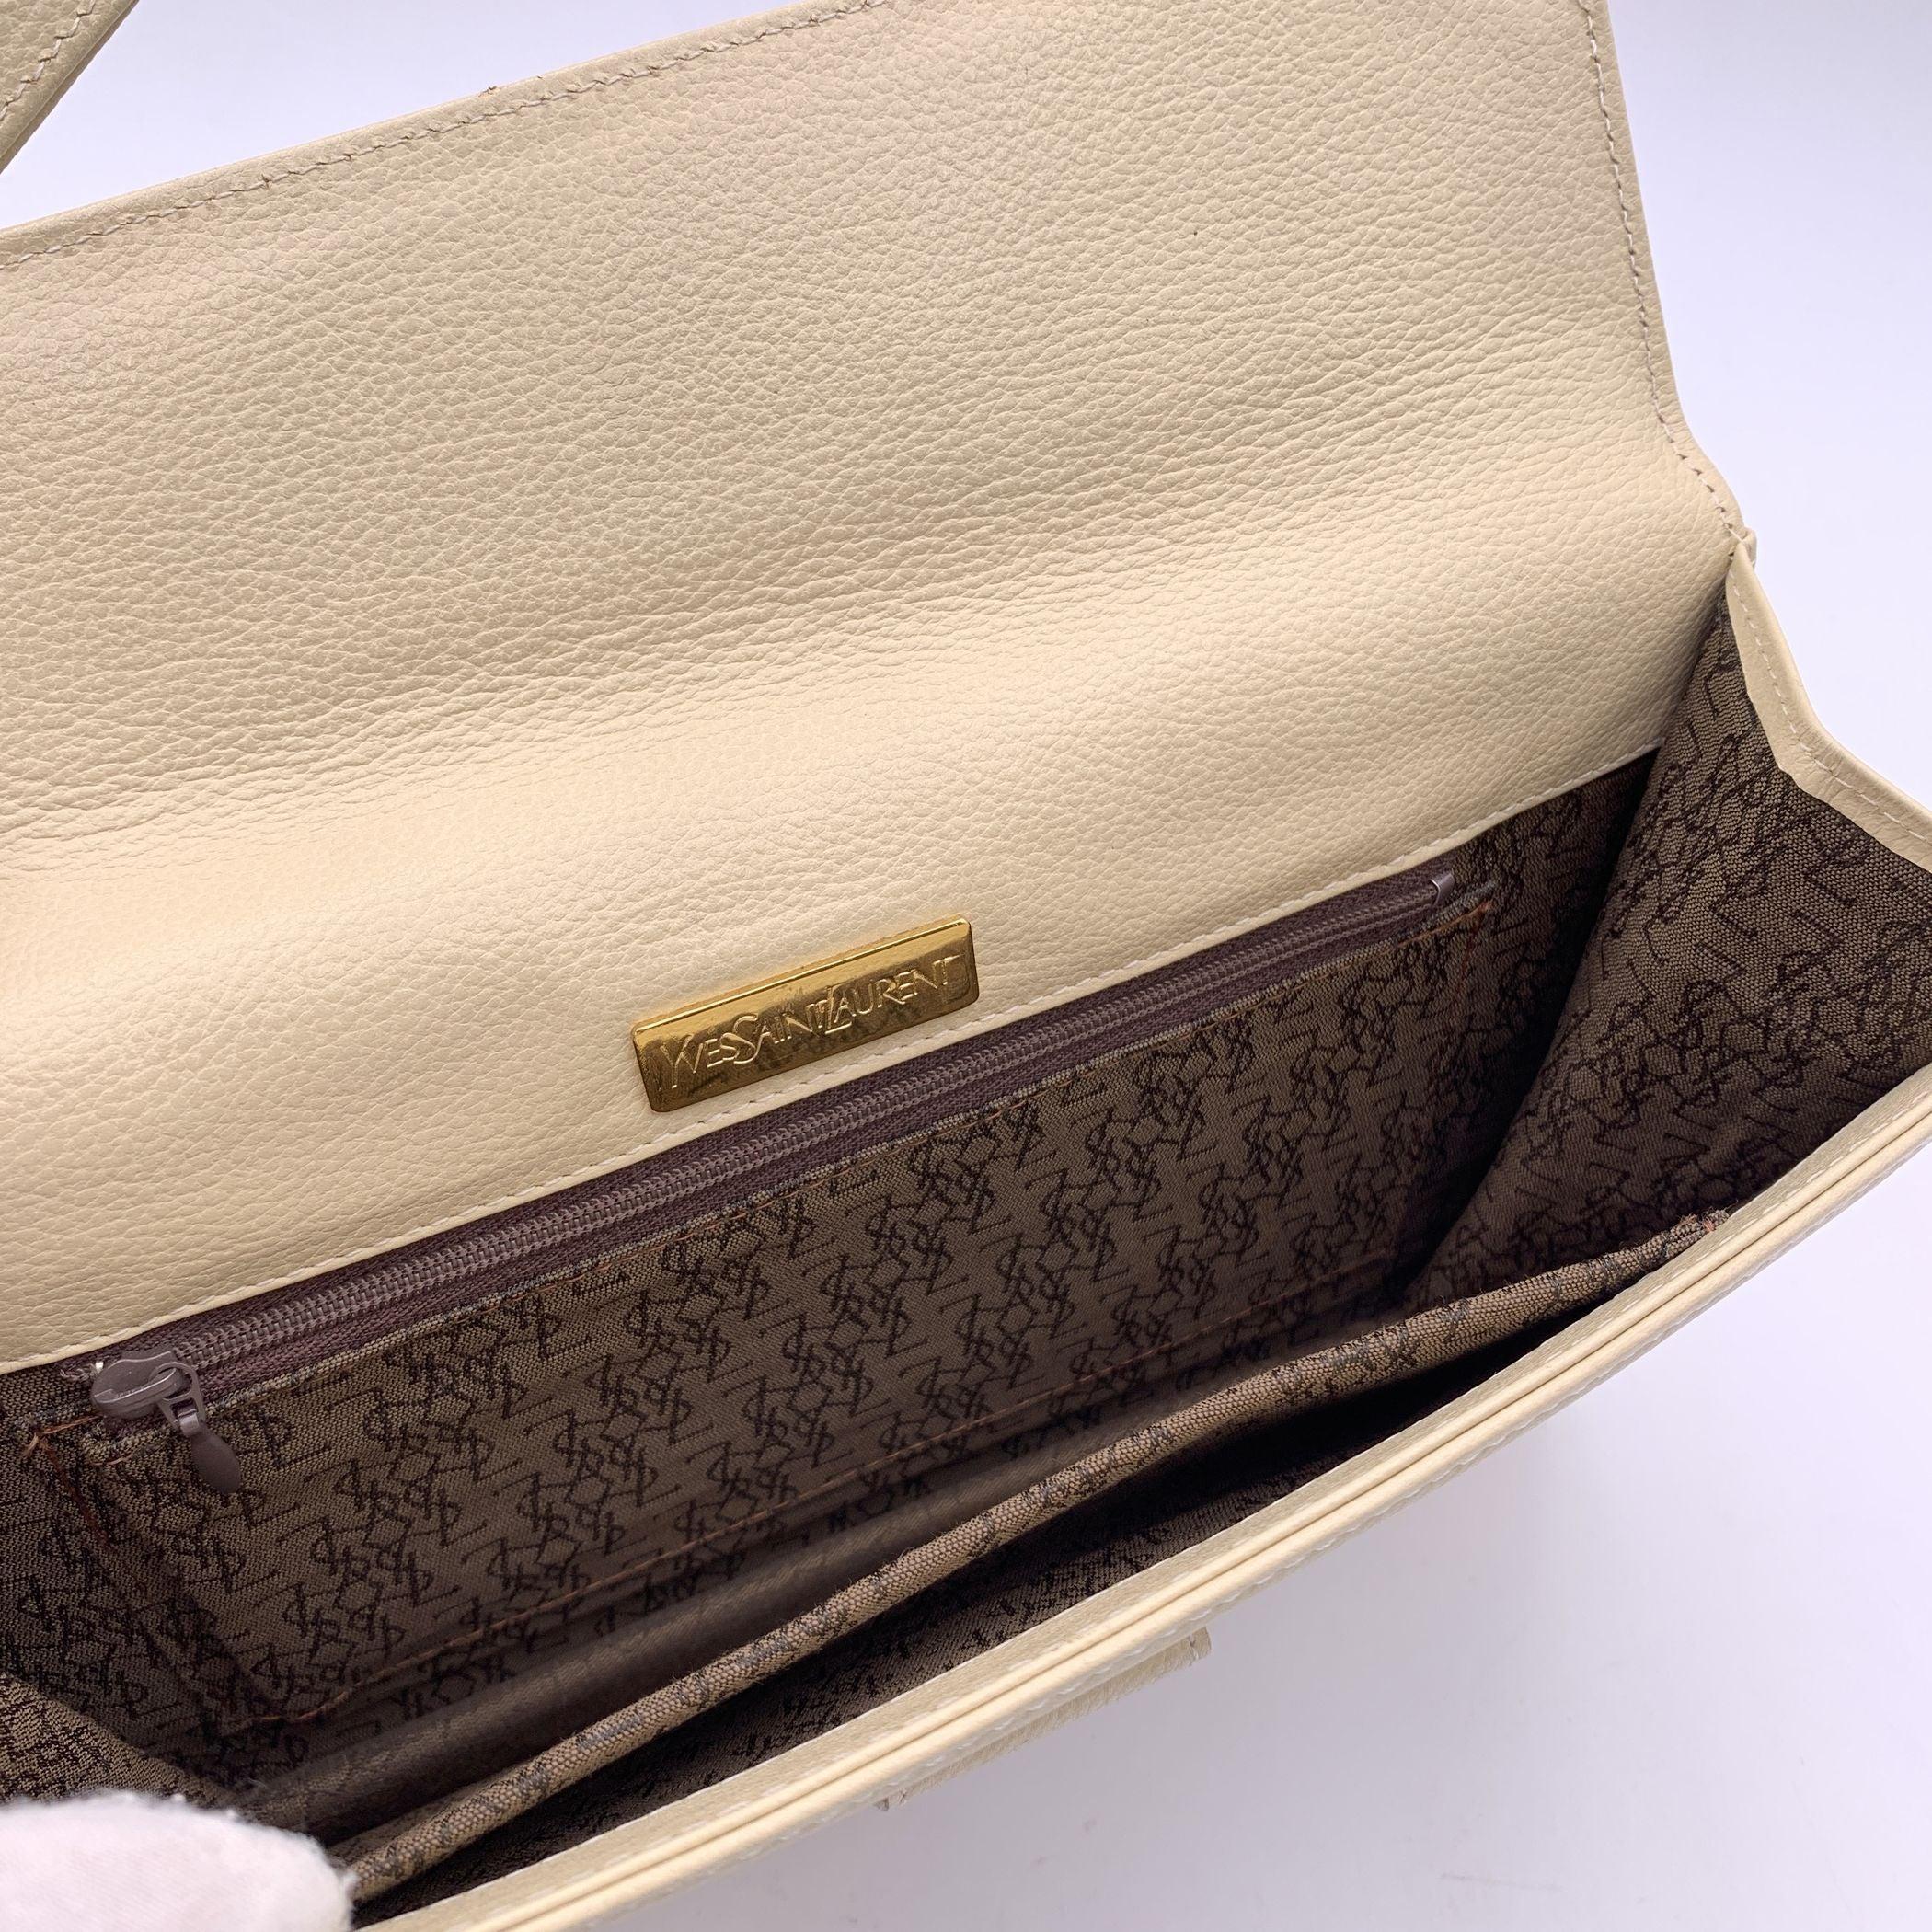 Yves Saint Laurent Vintage Beige Leather Clutch Bag Handbag For Sale 1